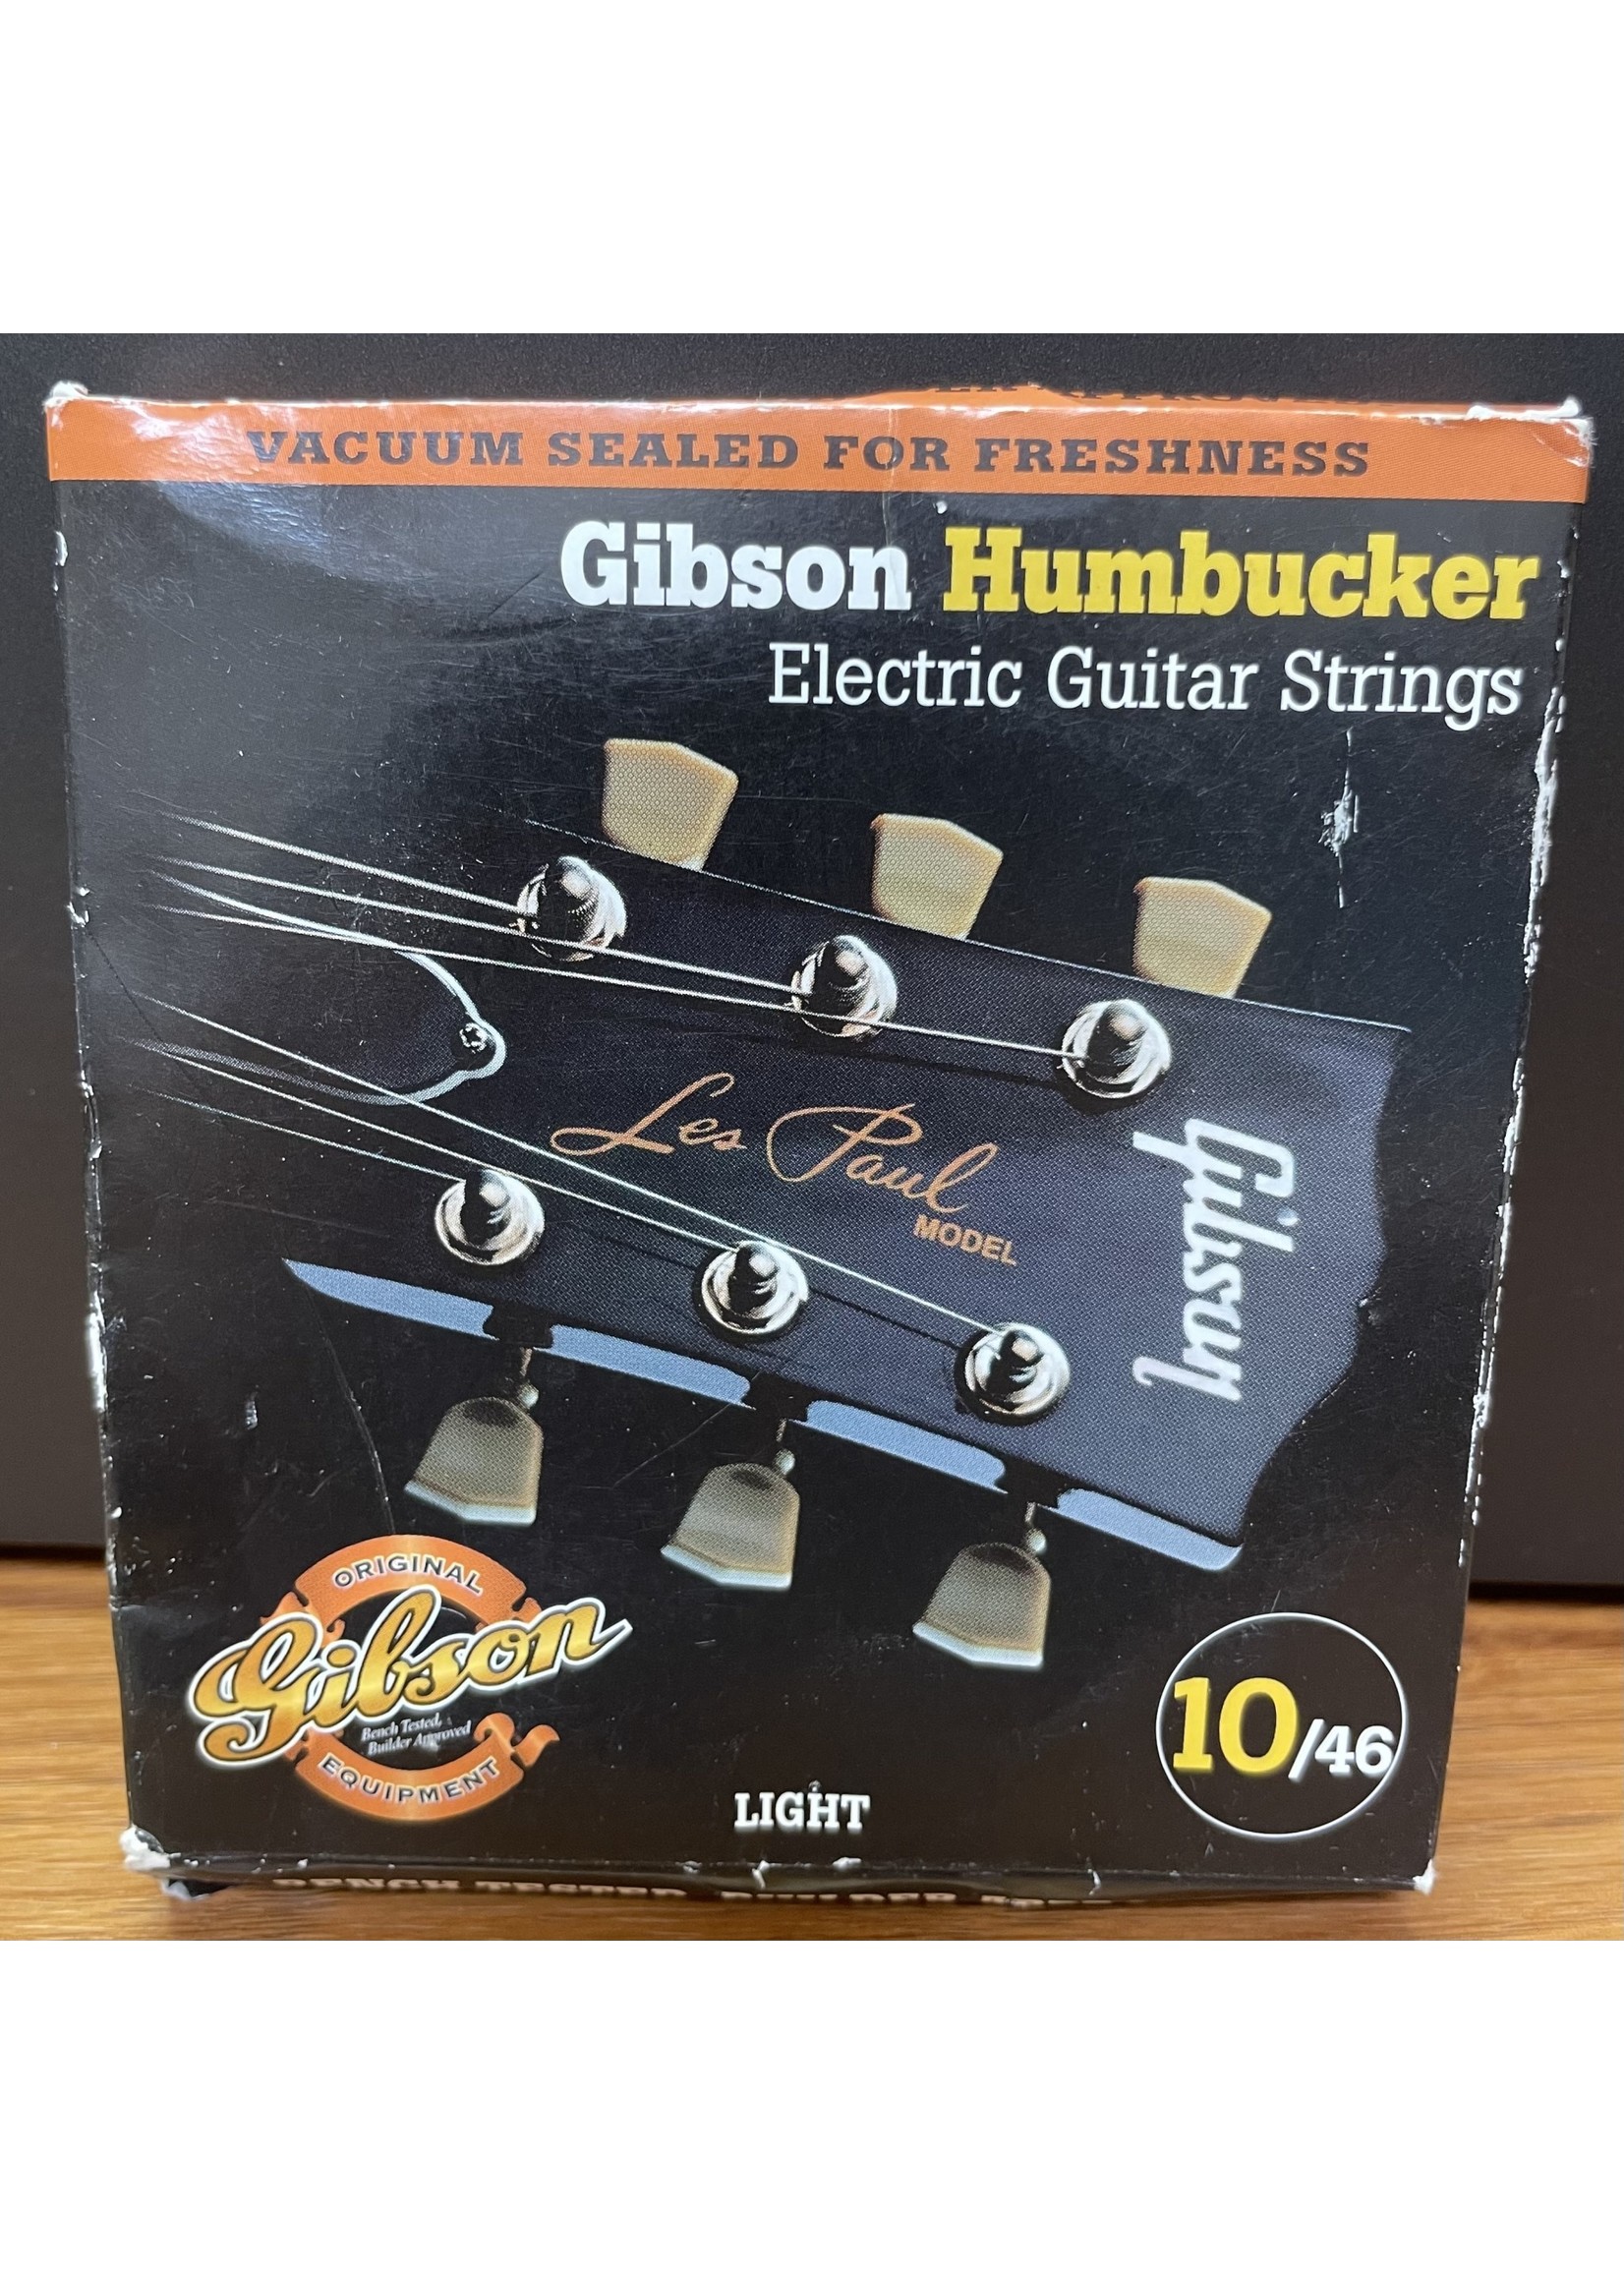 Gibson Gibson SEG-SA10 Humbucker Electric Guitar Strings, 10/46 Light, NOS